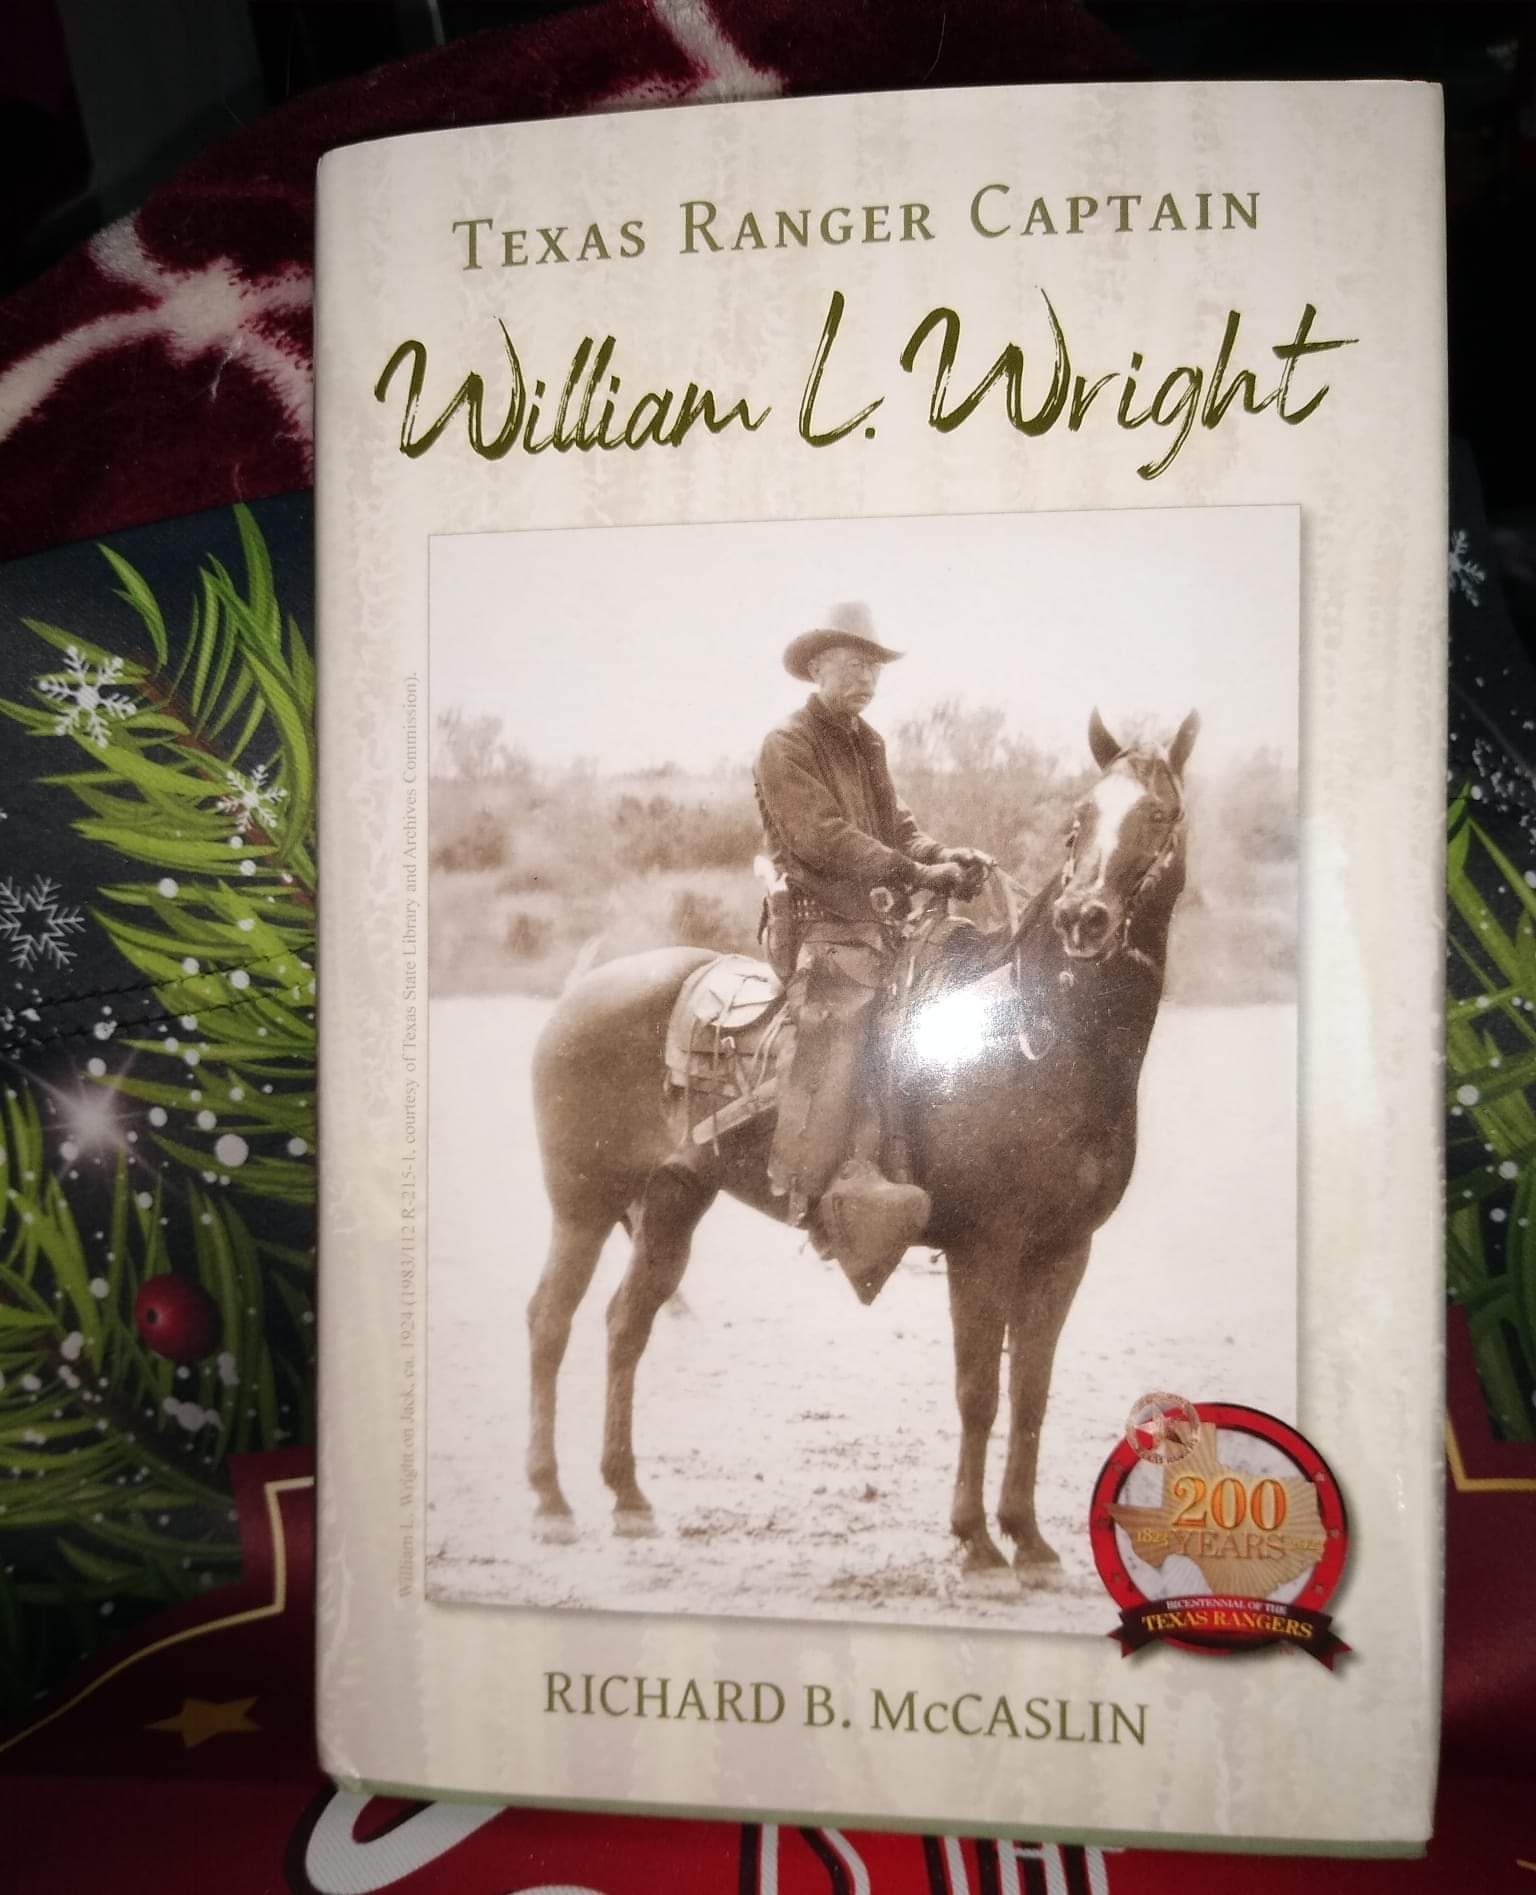 Texas Ranger Captain William L. Wright